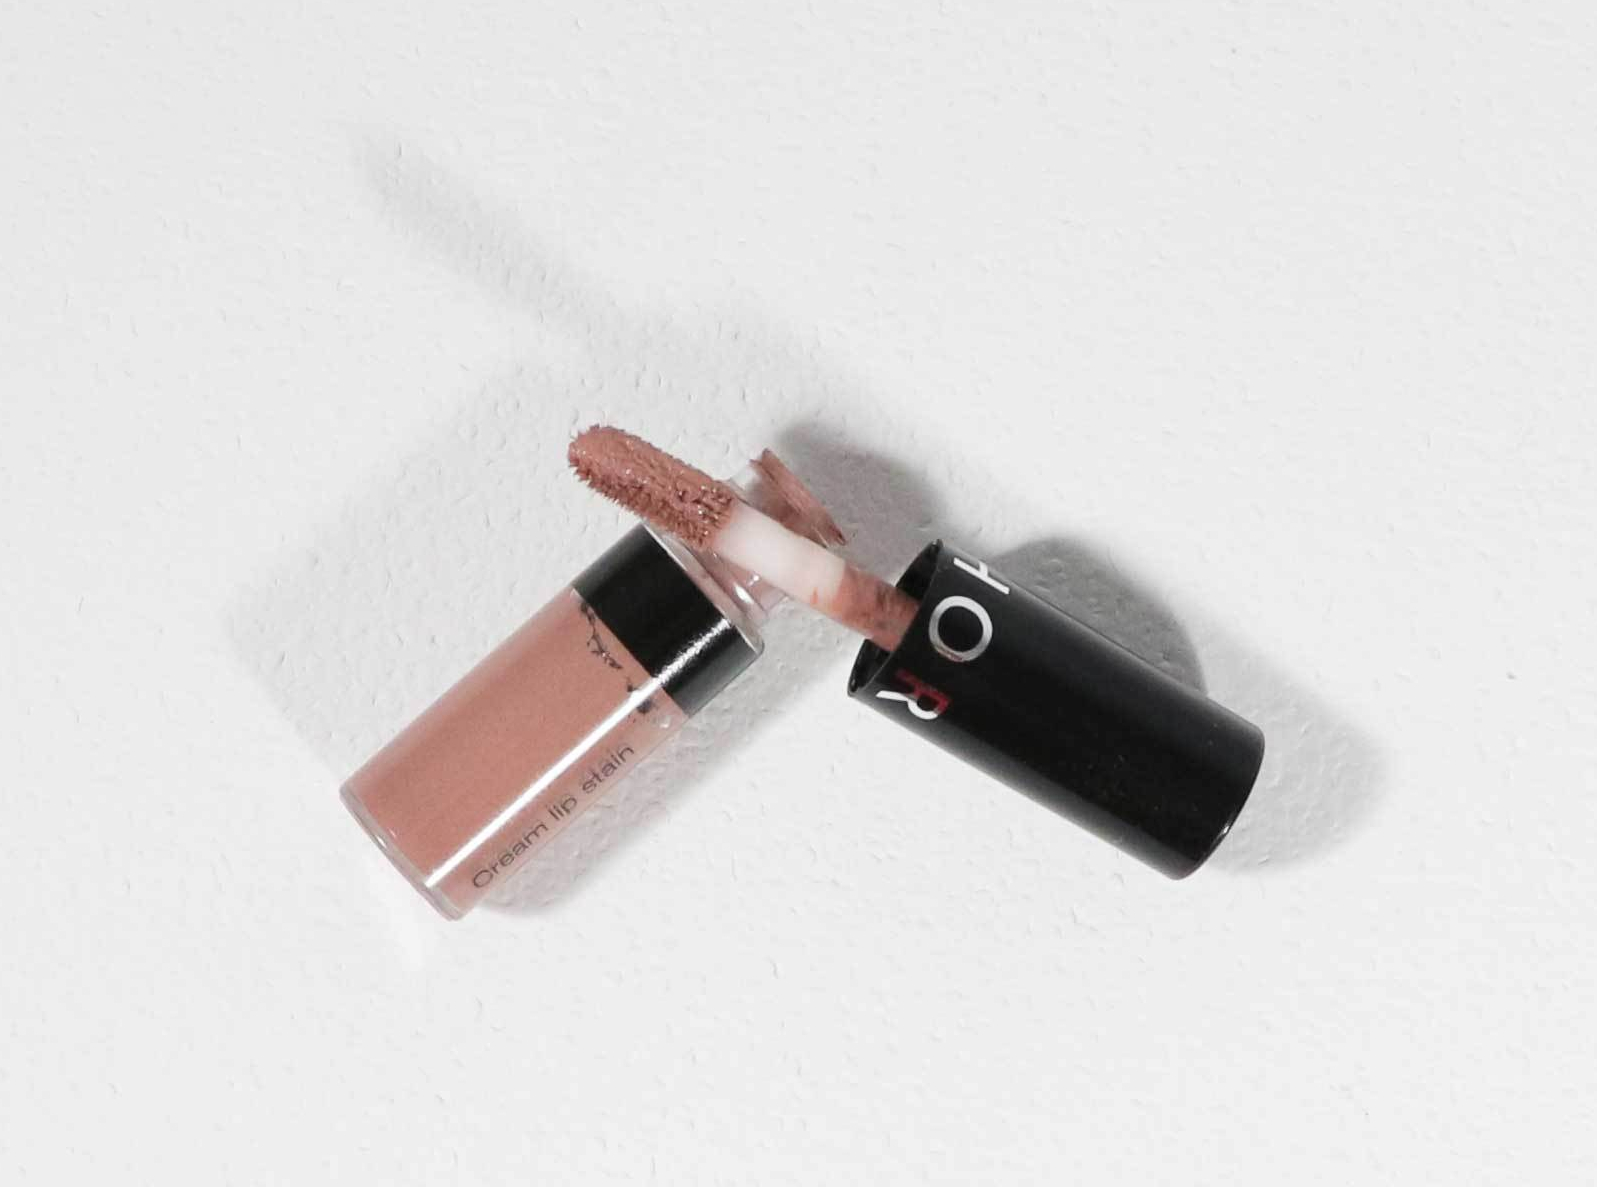 Sephora Cream Lip Stain Liquid Lipstick in Pink Tea